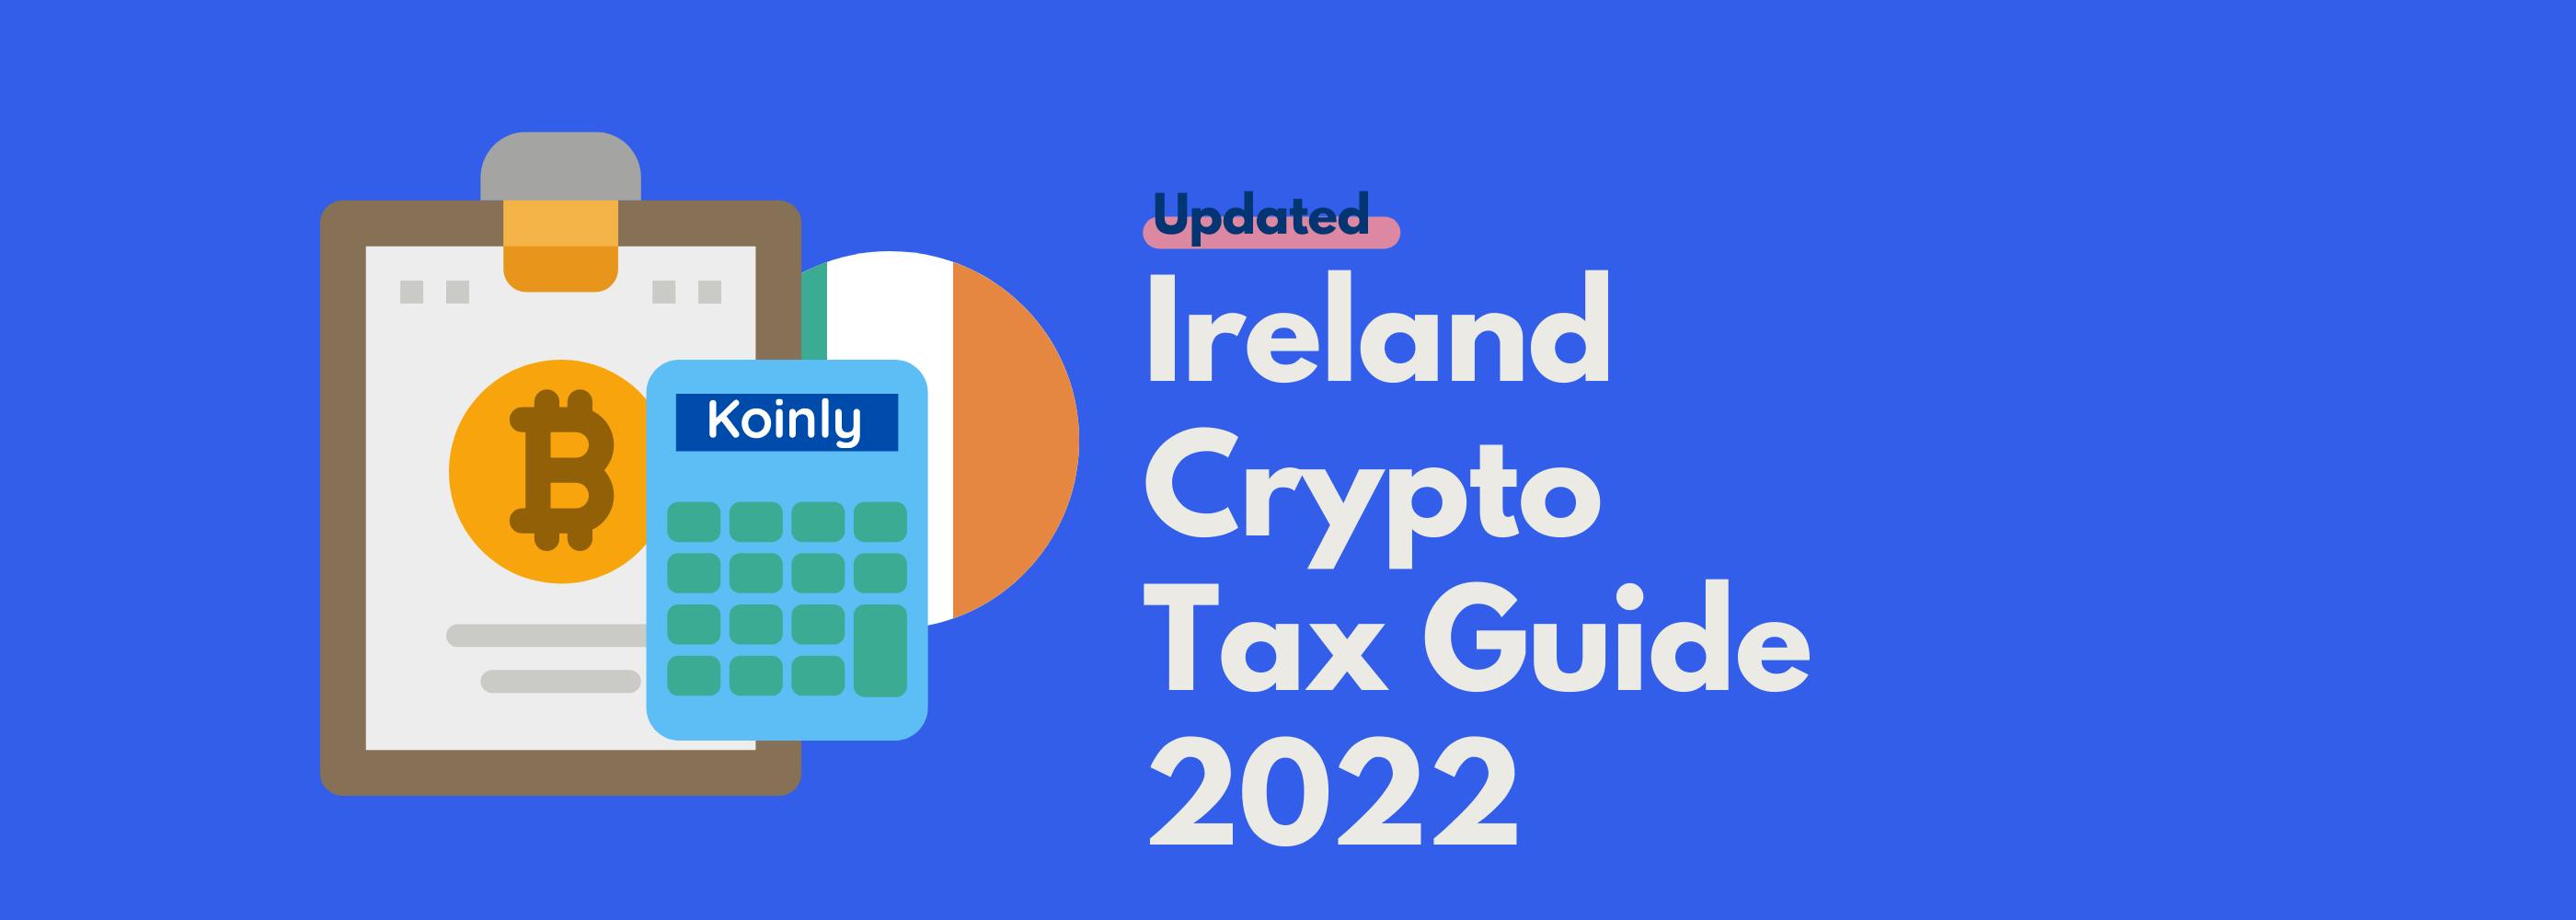 Ireland crypto tax guide